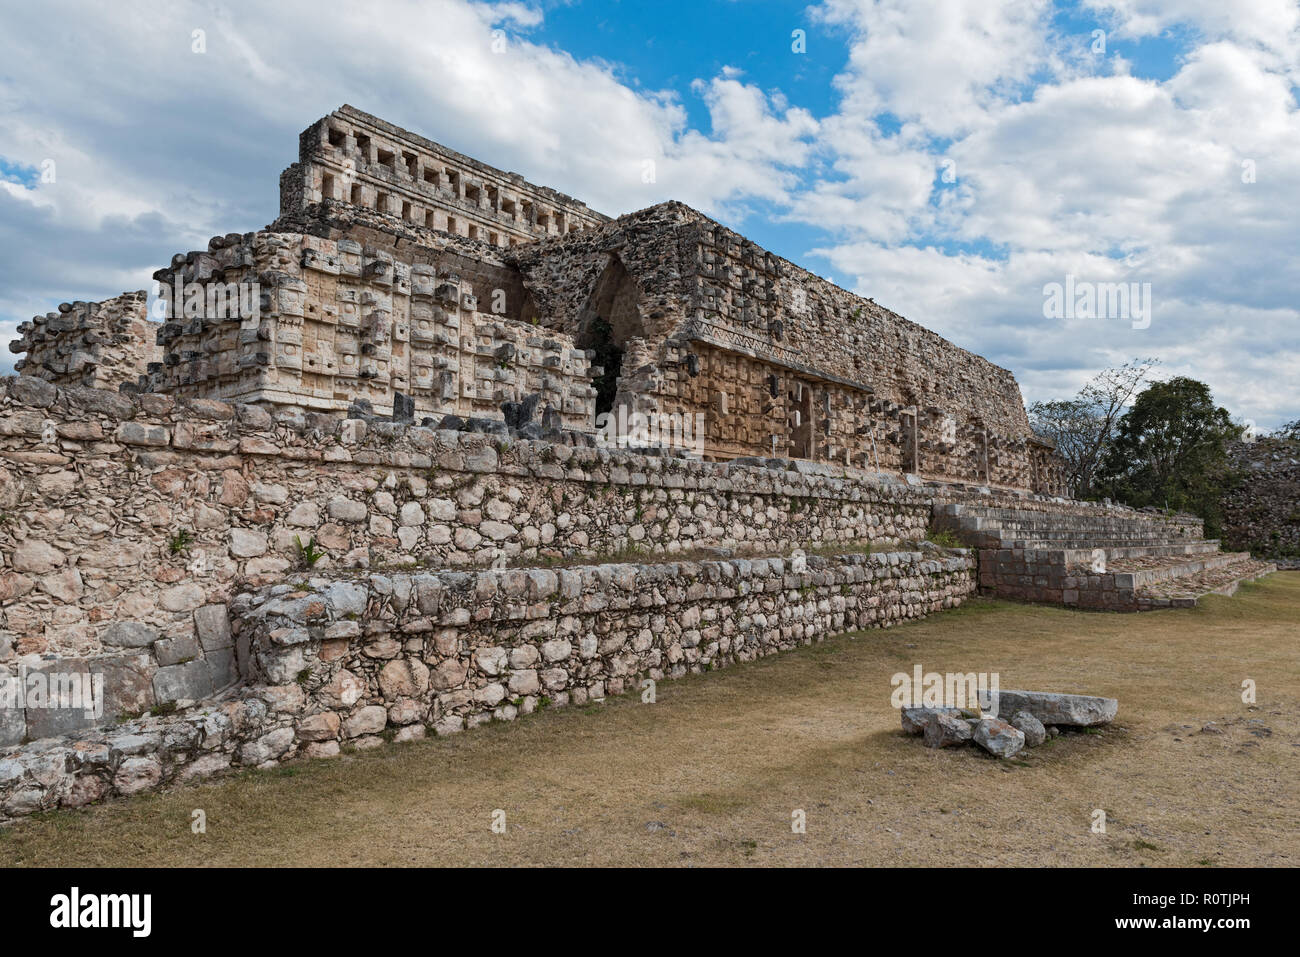 The ruins of the ancient Mayan city of Kabah, Yucatan, Mexico. Stock Photo